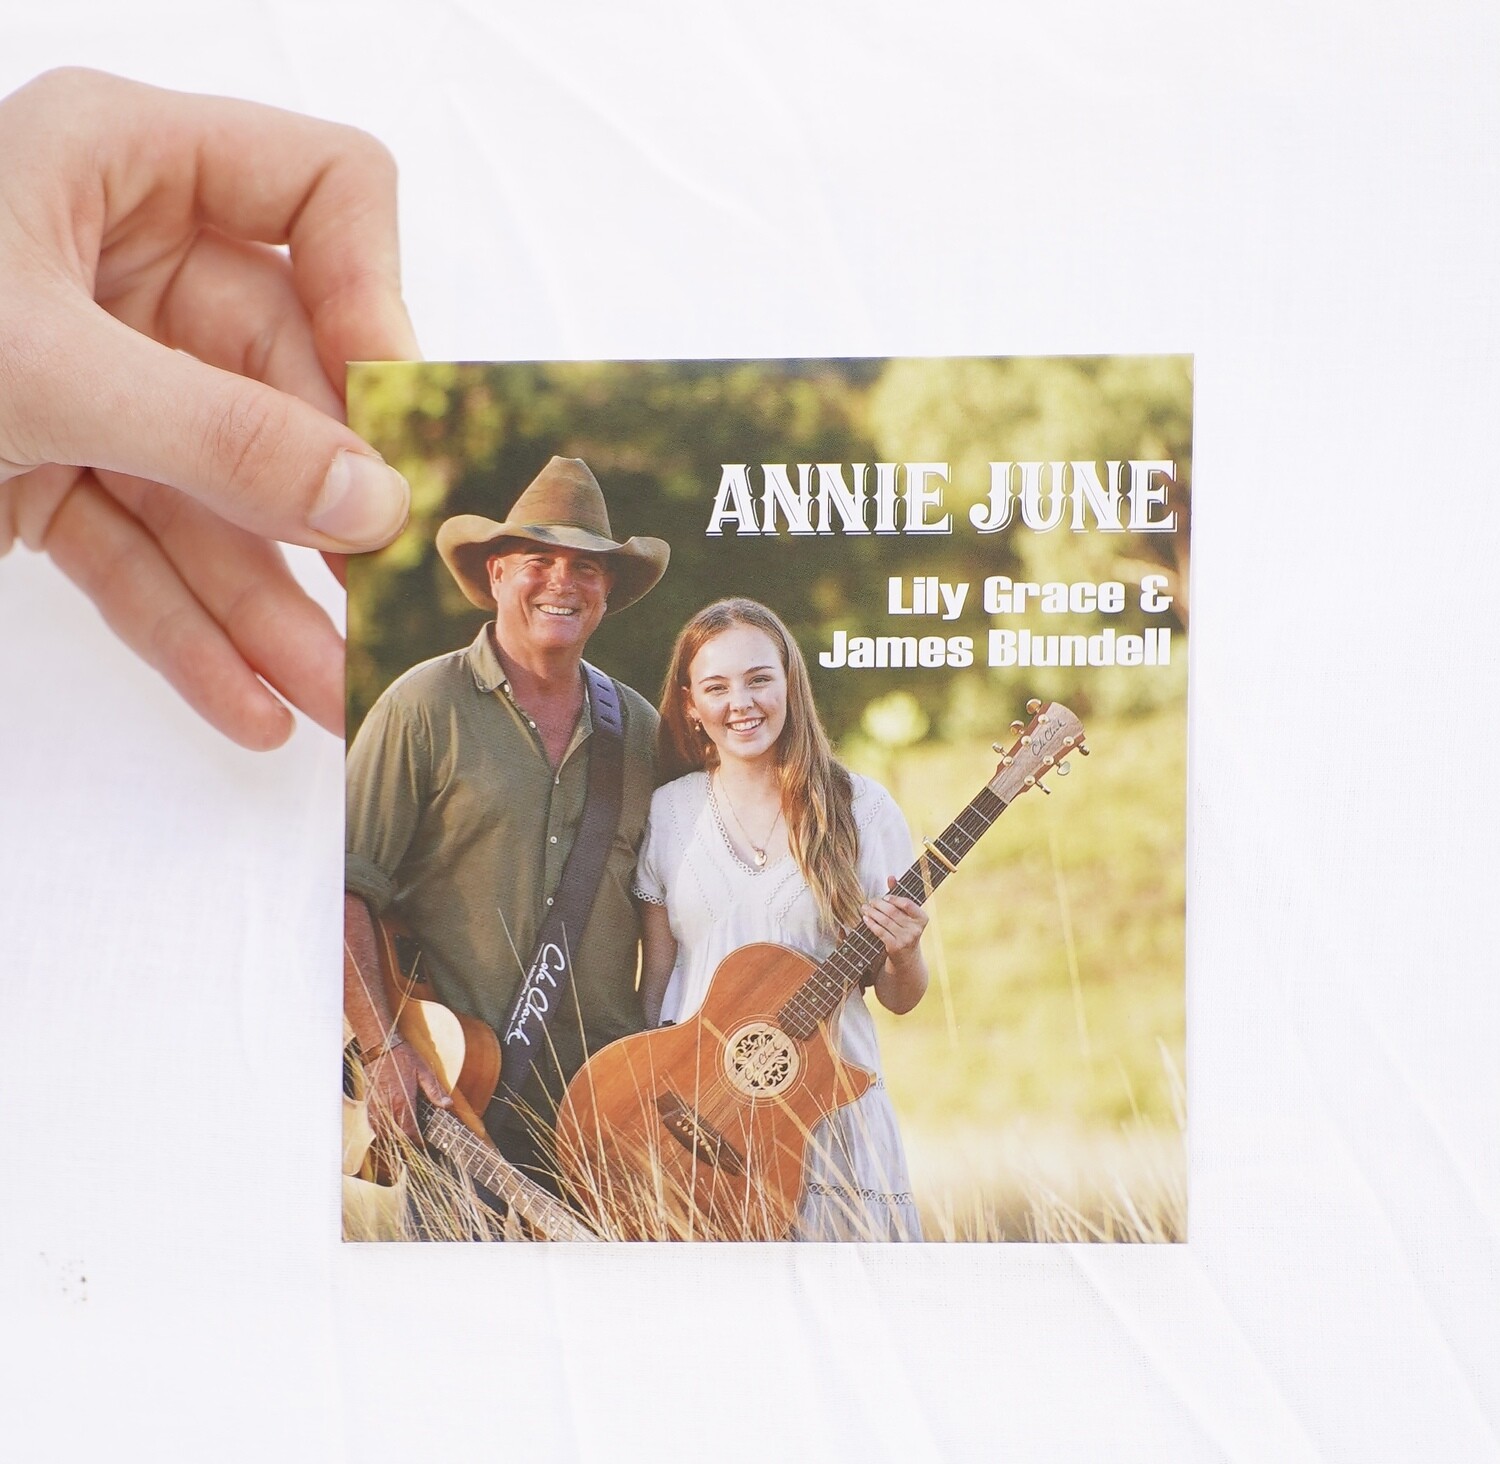 Annie June CD (signed) - OVERSEAS orders